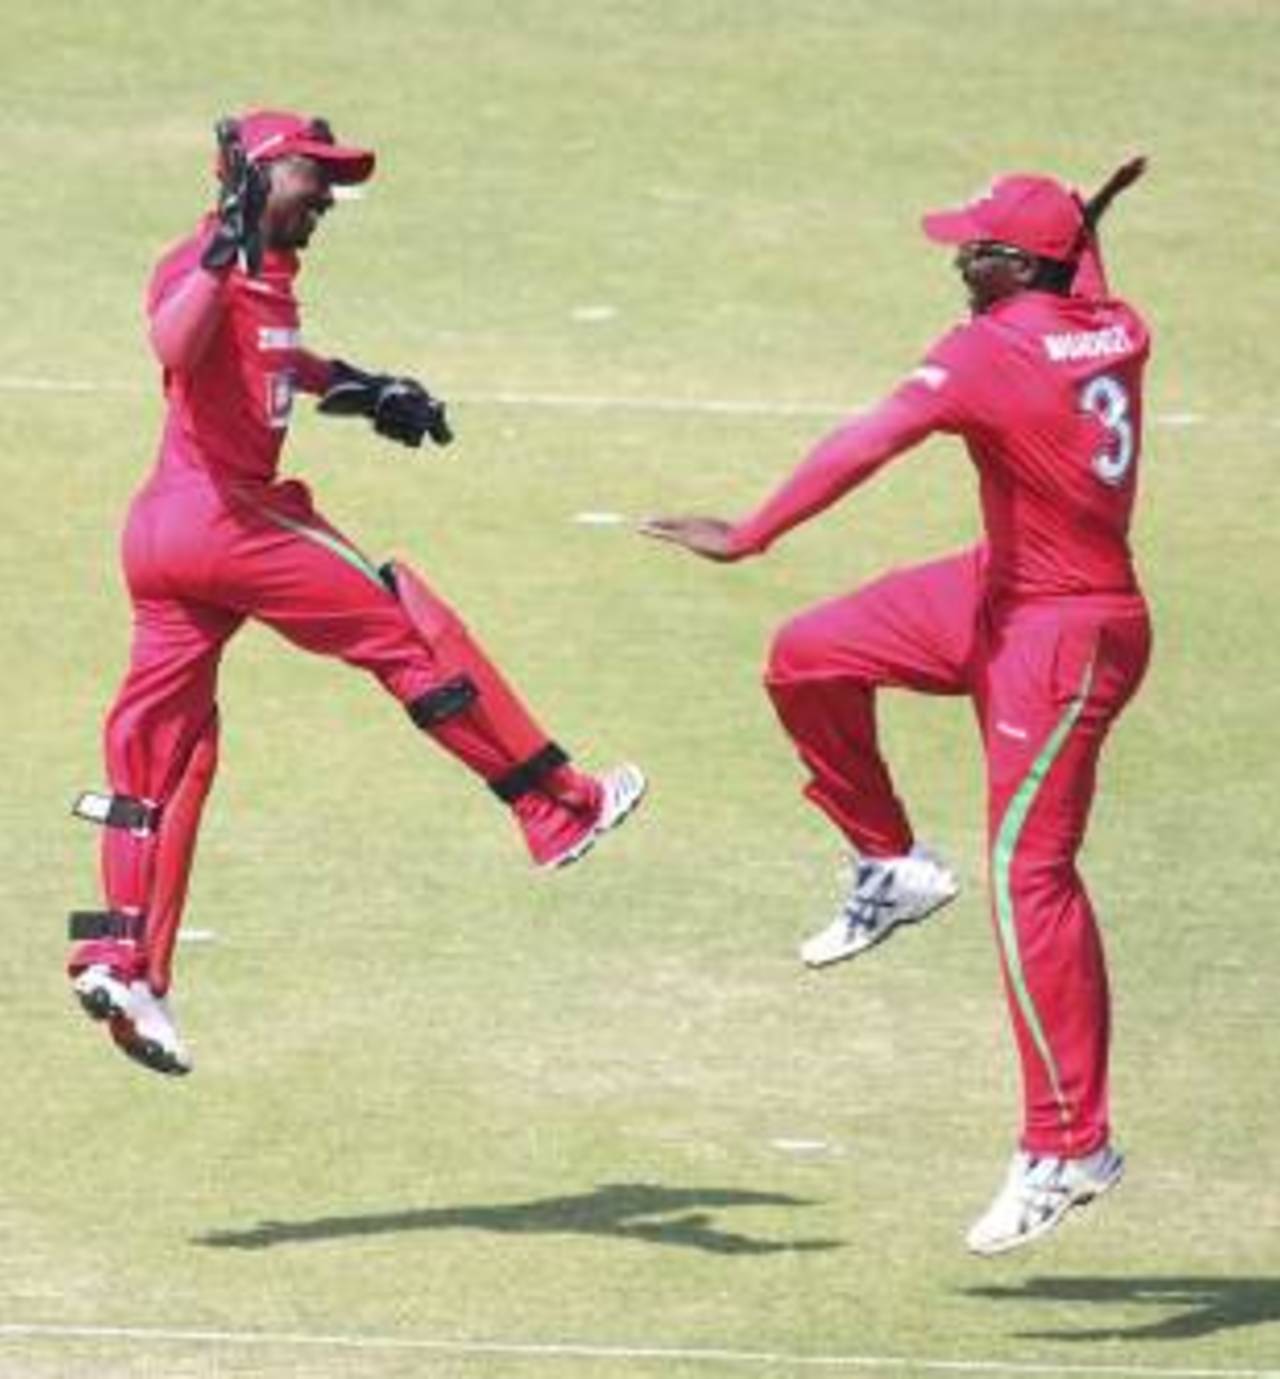 Tatenda Taibu and Hamilton Masakadza celebrate a wicket, Zimbabwe v Bangladesh, 2nd ODI, Harare, August 14, 2011